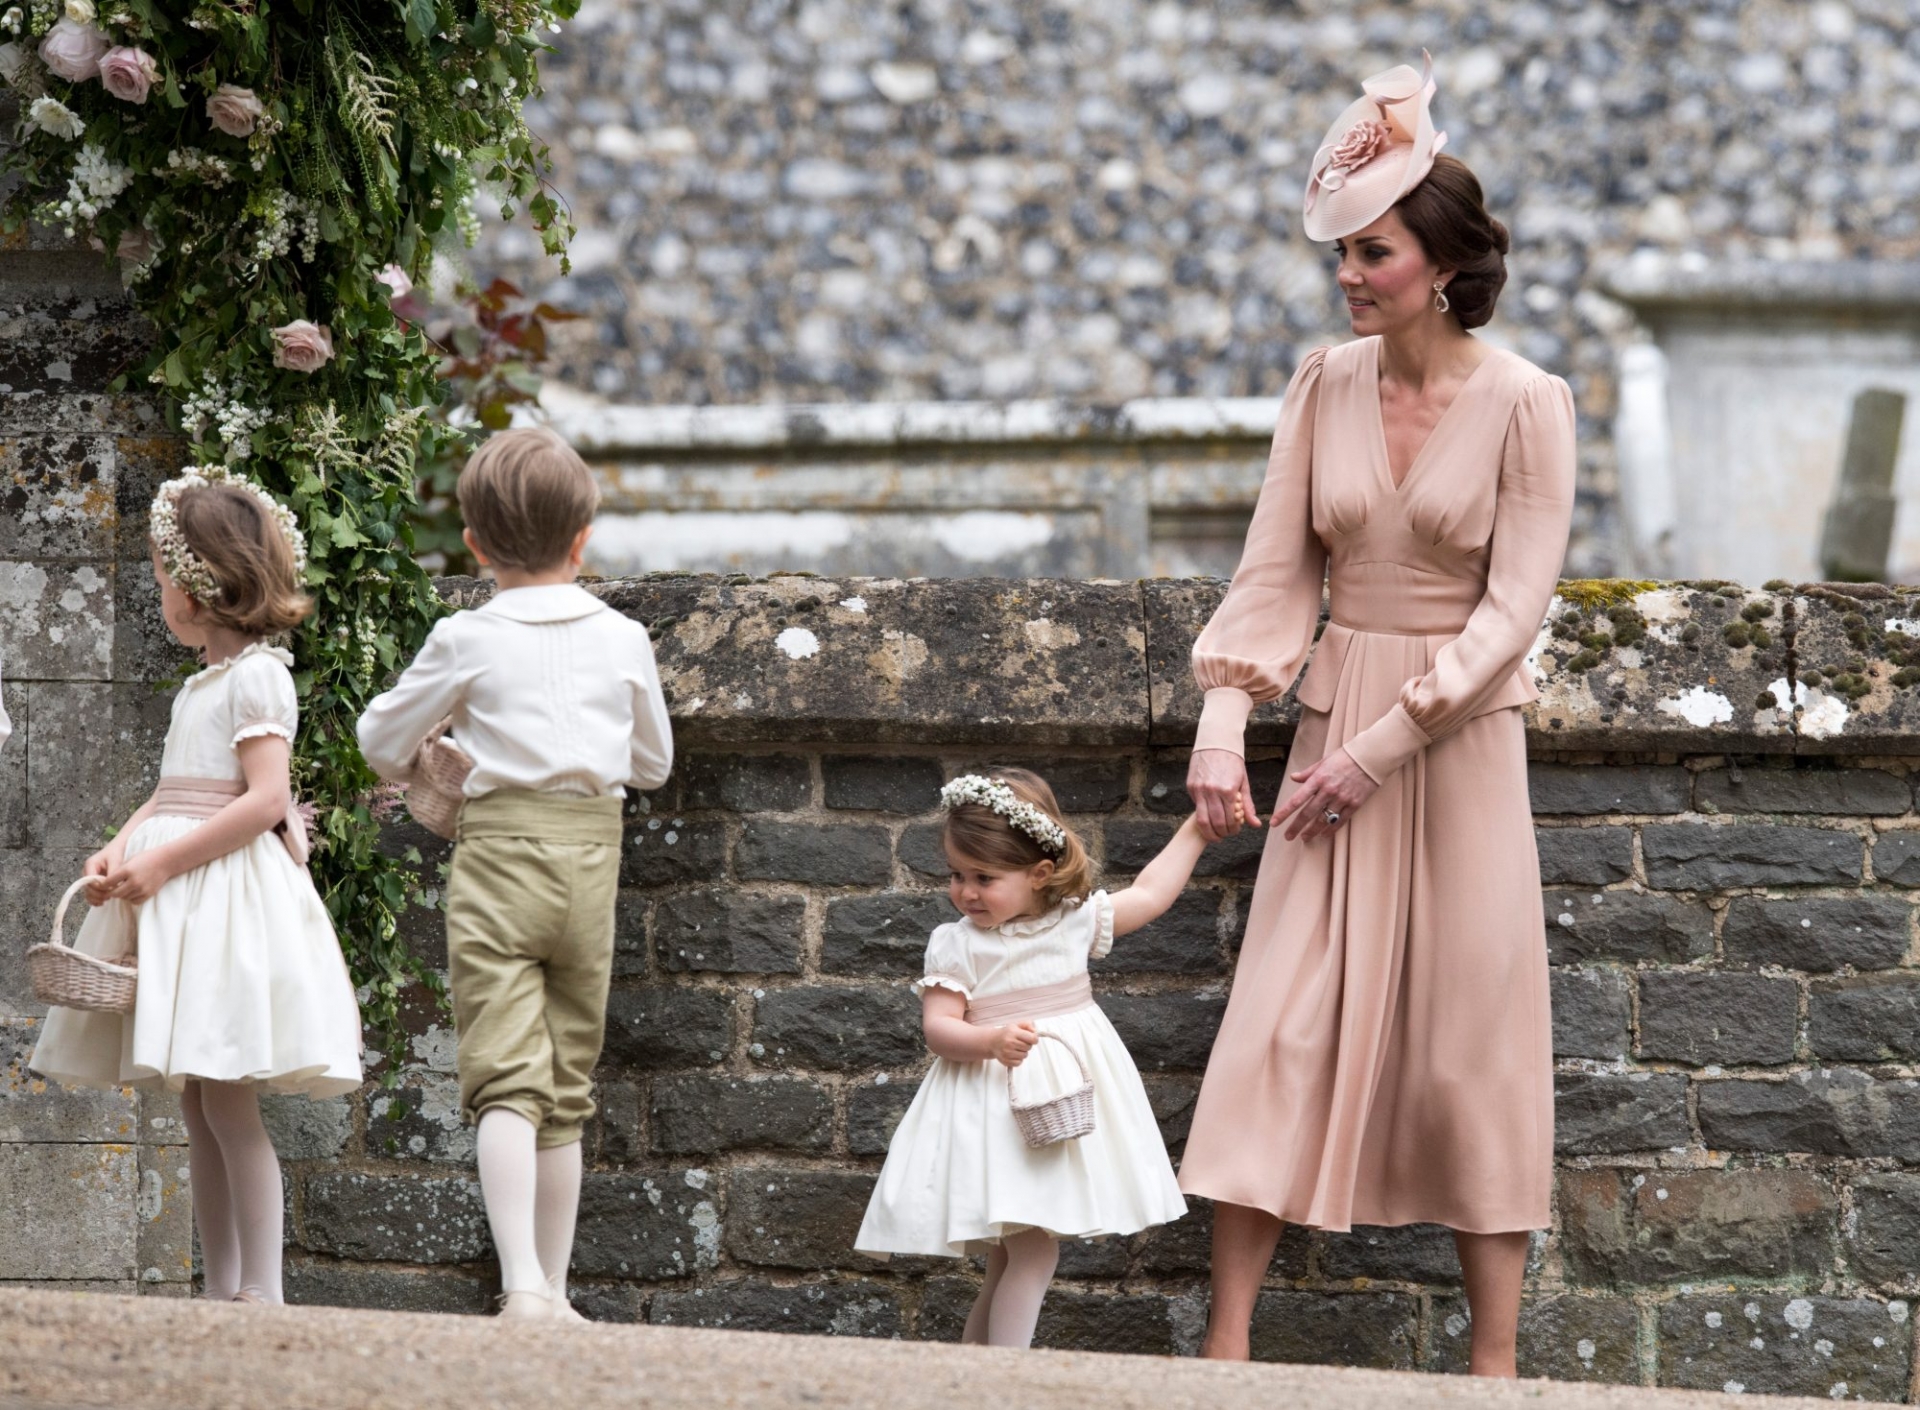 Trong đám cưới em gái, Công nương Kate đã thể hiện đẳng cấp quý tộc Hoàng gia khi lựa chọn chiếc đầm lụa thuộc dòng sản phẩm thiết kế riêng của nhà mốt Alexander McQueen. Dù không phải nhân vật chính nhưng với set đồ này cô cũng đã thu hút sự chú ý của tất cả khách mời có mặt trong buổi lễ.